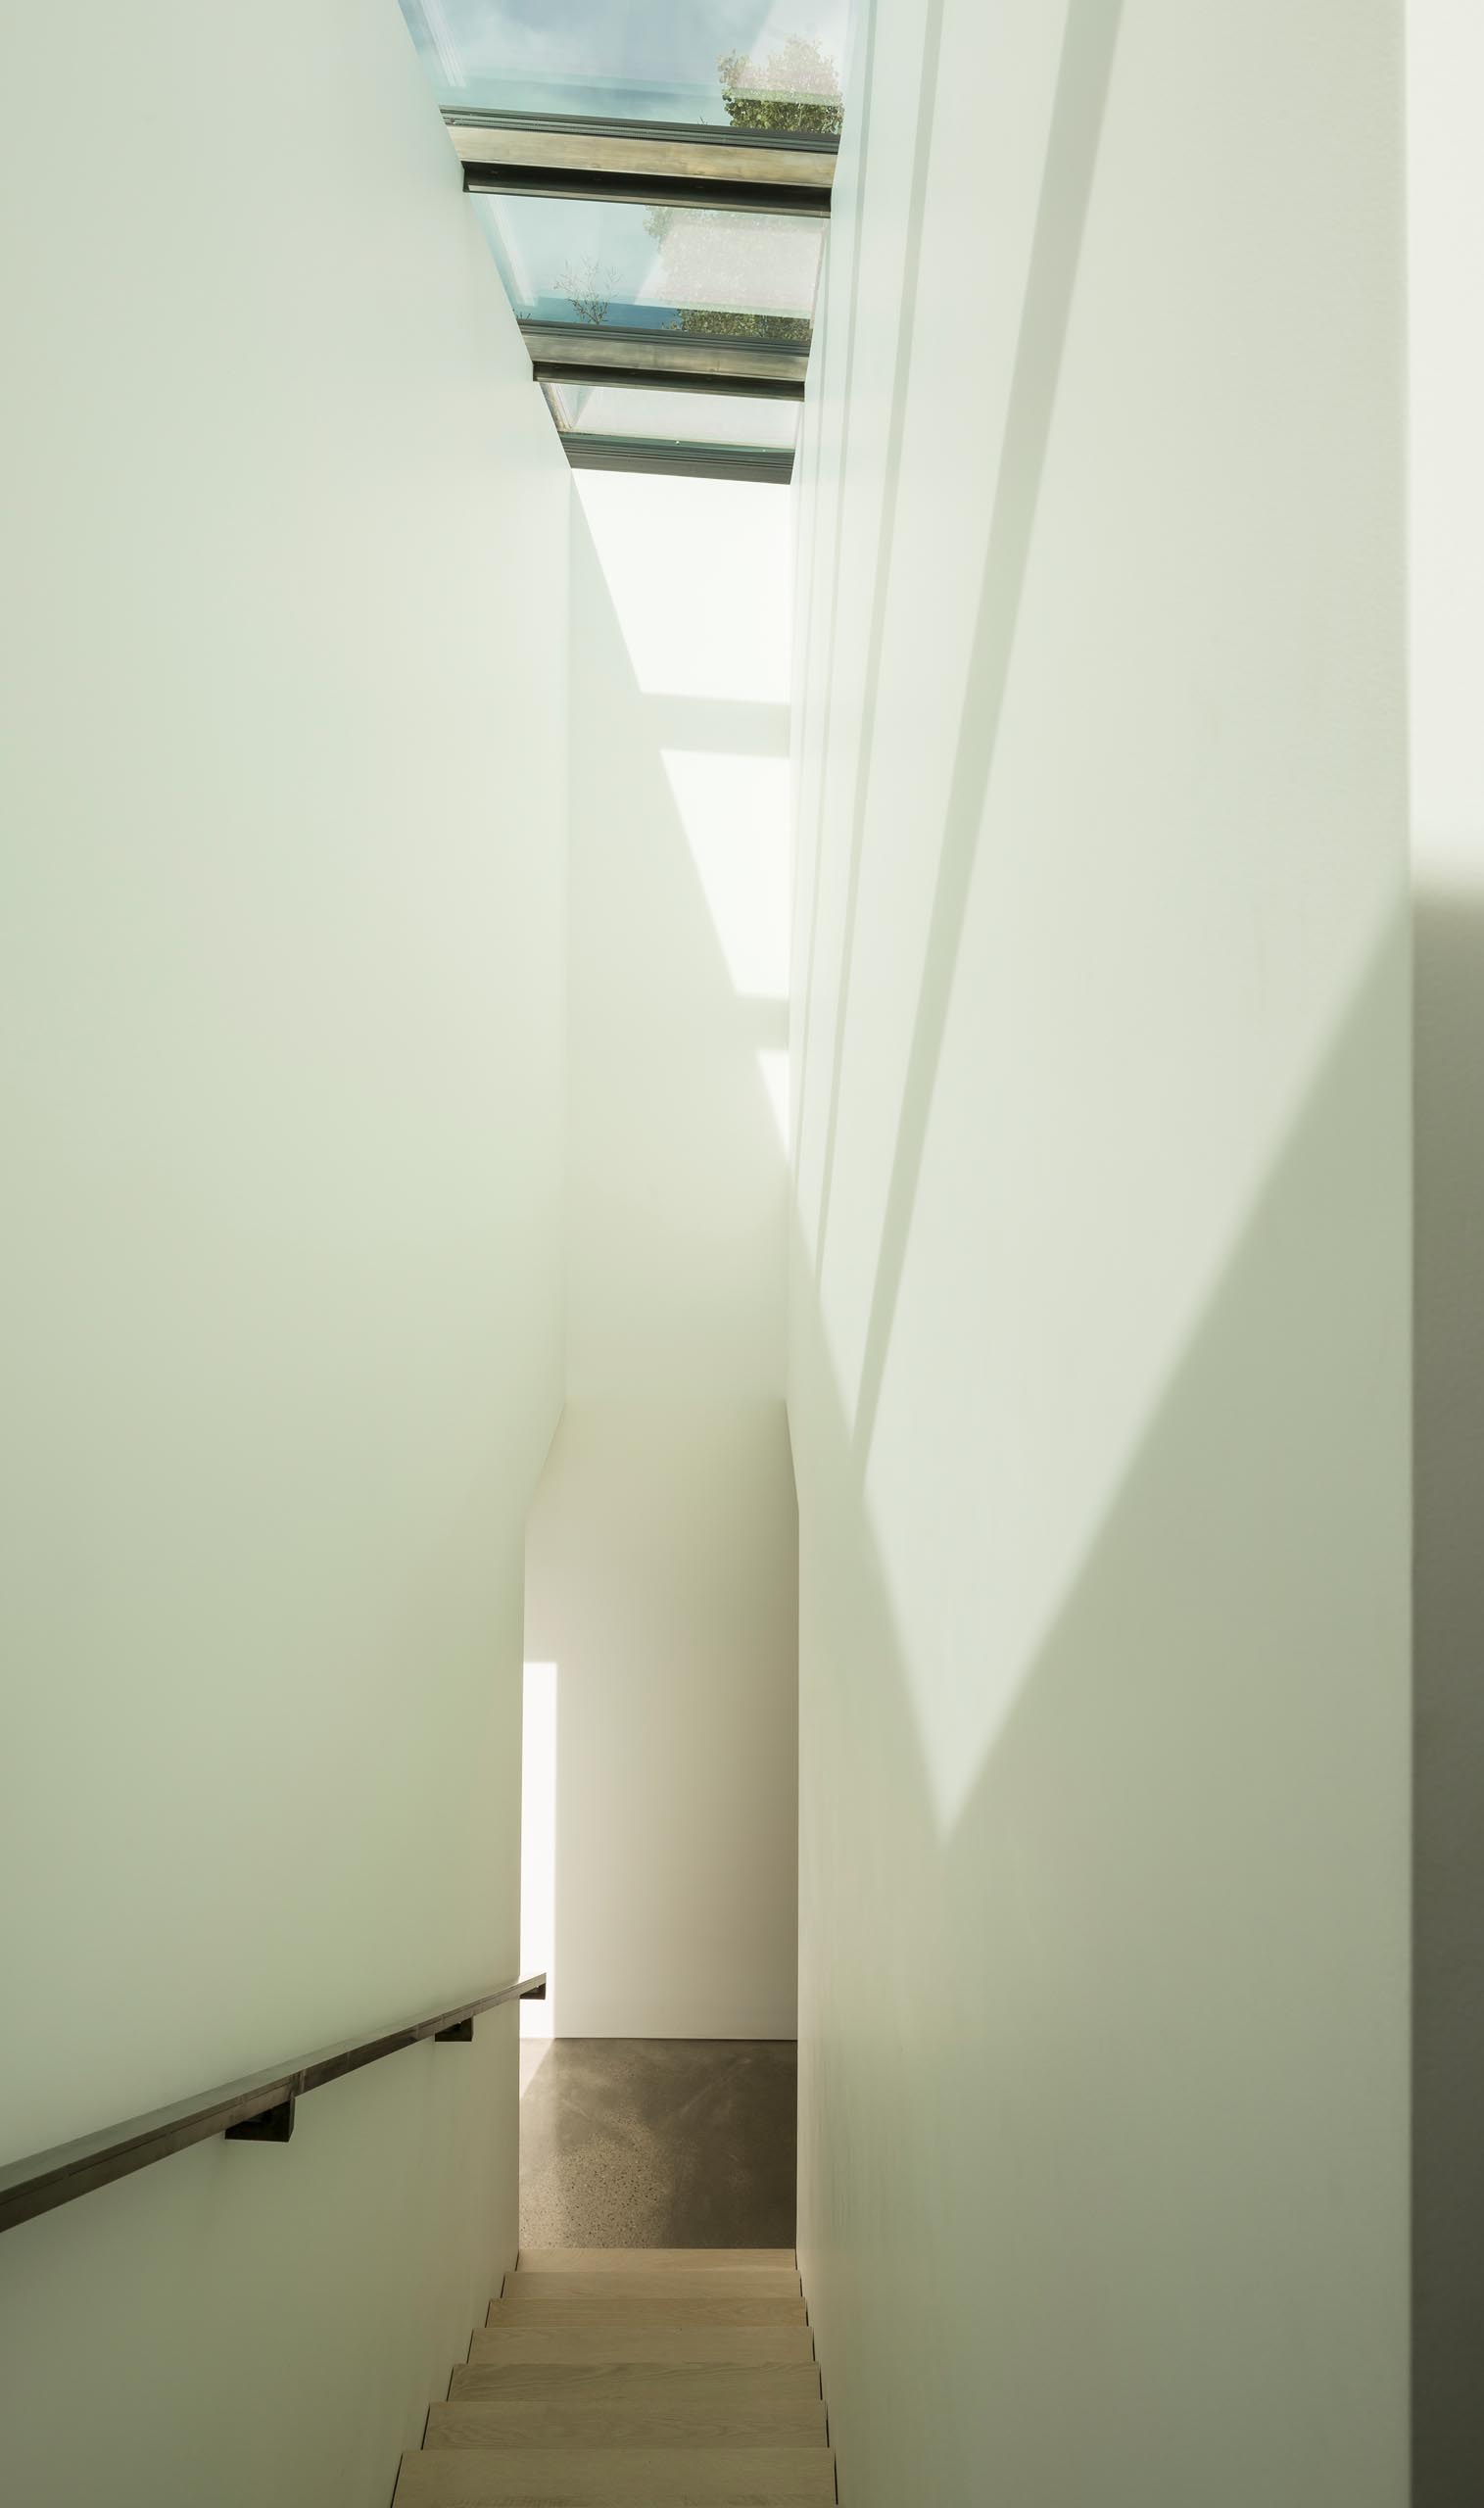 Современная лестница с металлическими перилами и мансардными окнами.